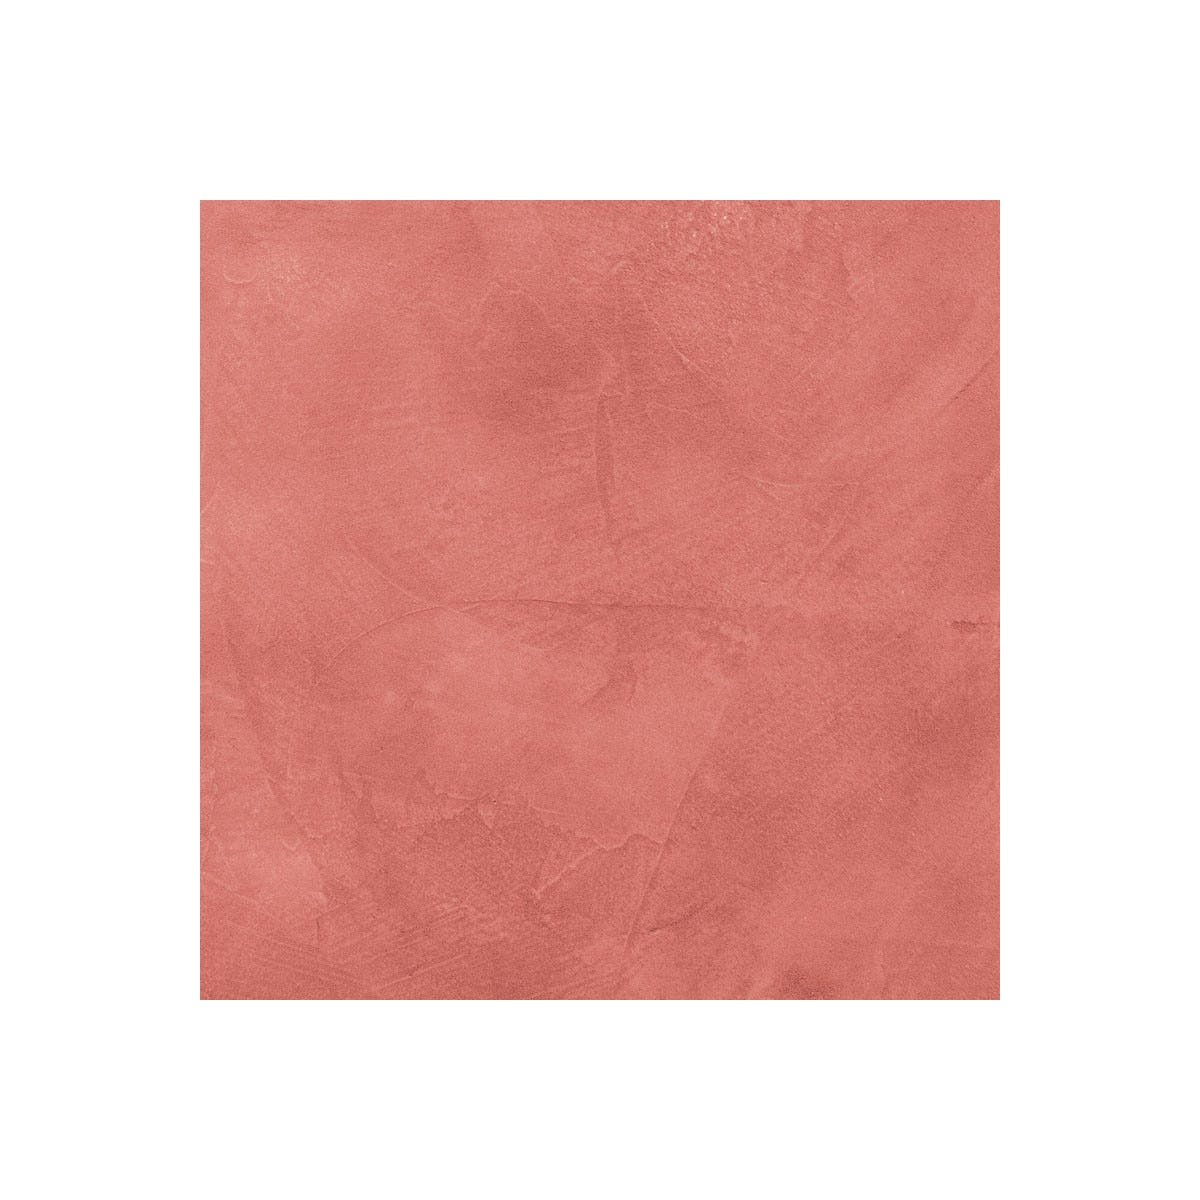 BETON CIRE CARRELAGE POUR SOLS ET MURS - KIT BETON CIRE SUR CARRELAGE - 2 m² (en 2 couches) - Papaye Rose Orange - ARCANE INDUSTRIES 6